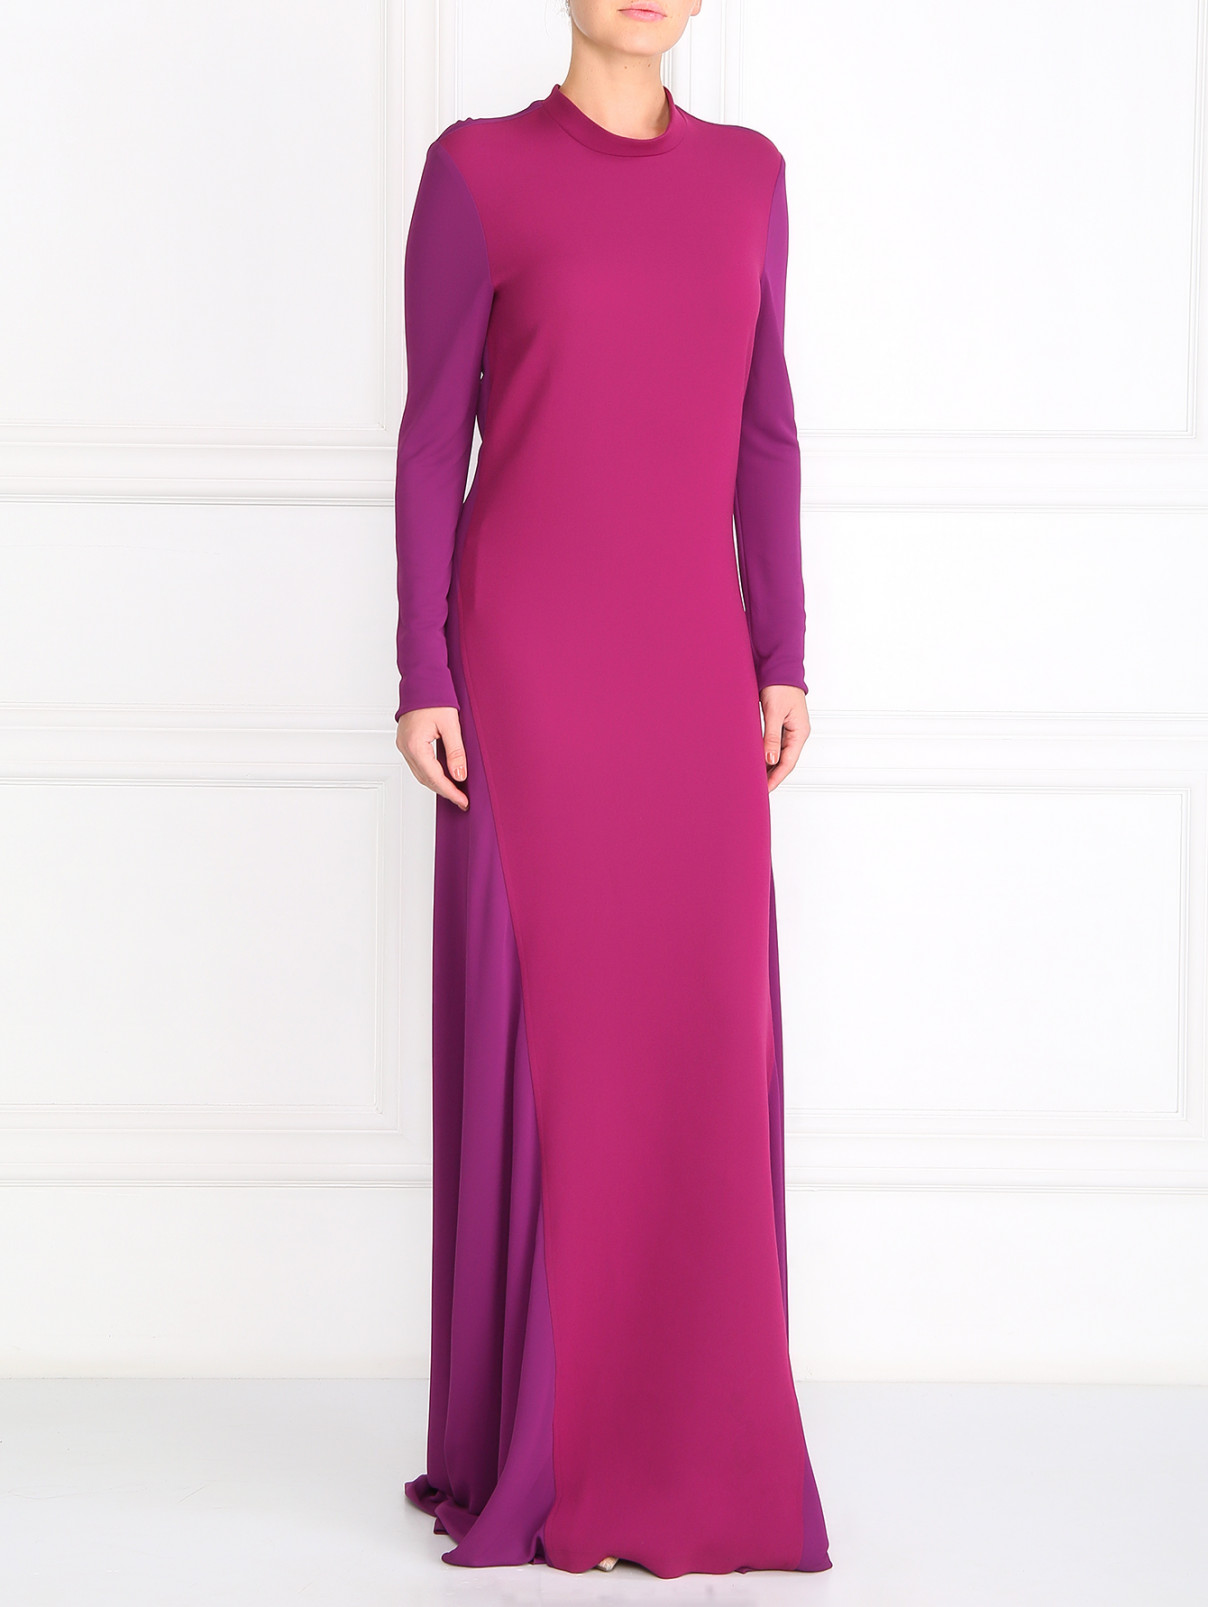 Платье-макси с открытой спиной Jean Paul Gaultier  –  Модель Общий вид  – Цвет:  Фиолетовый